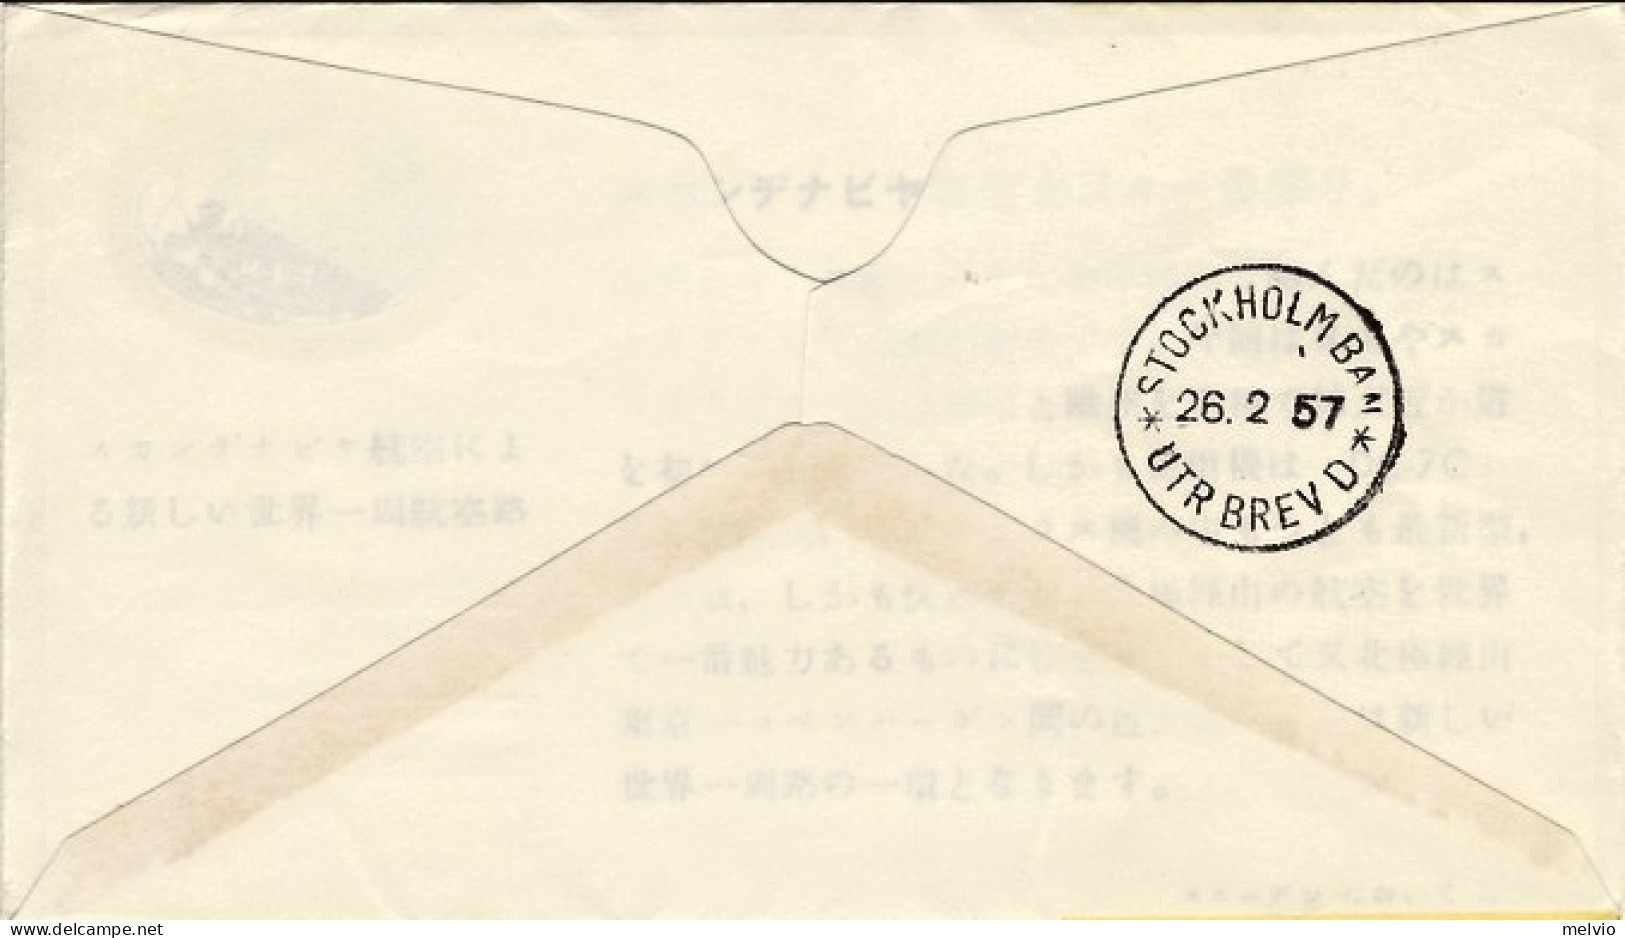 1957-Giappone Japan I^volo SAS Tokyo Stoccolma Attraverso Il Polo Nord - Storia Postale